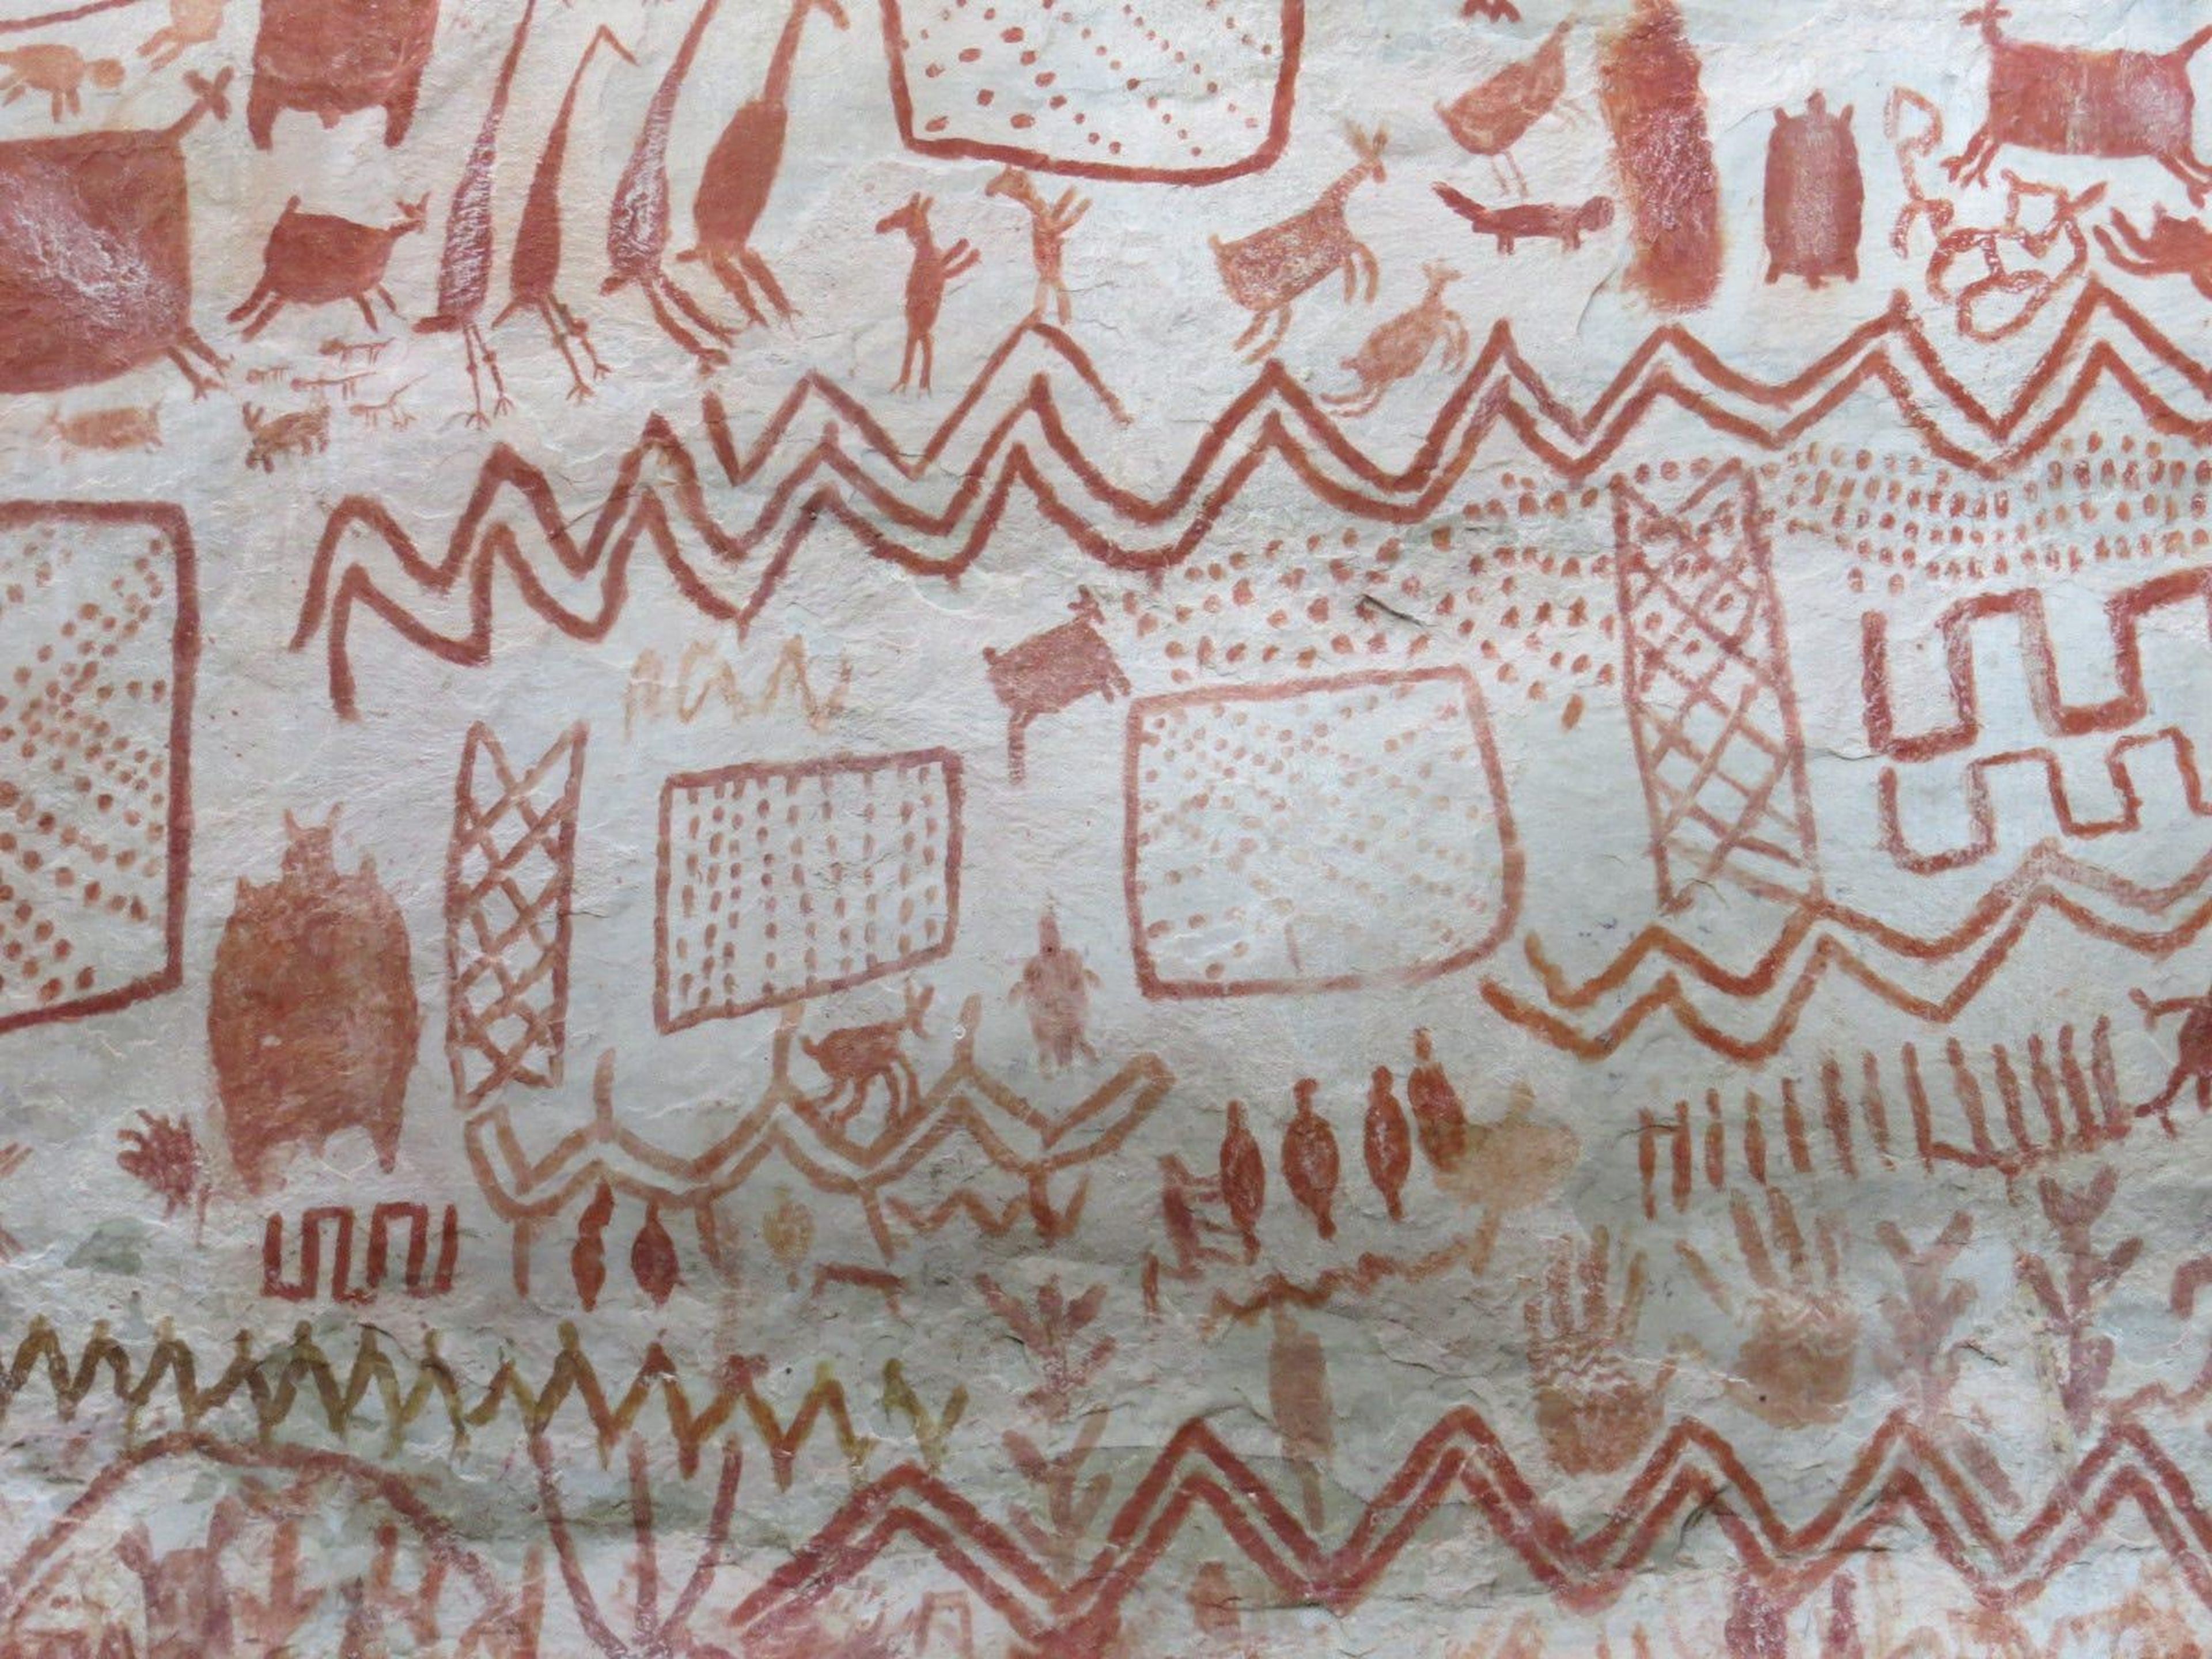 Dibujos antiguos de animales, humanos y formas geométricas decoran 3 refugios rocosos recientemente descubiertos en la Amazonía colombiana.